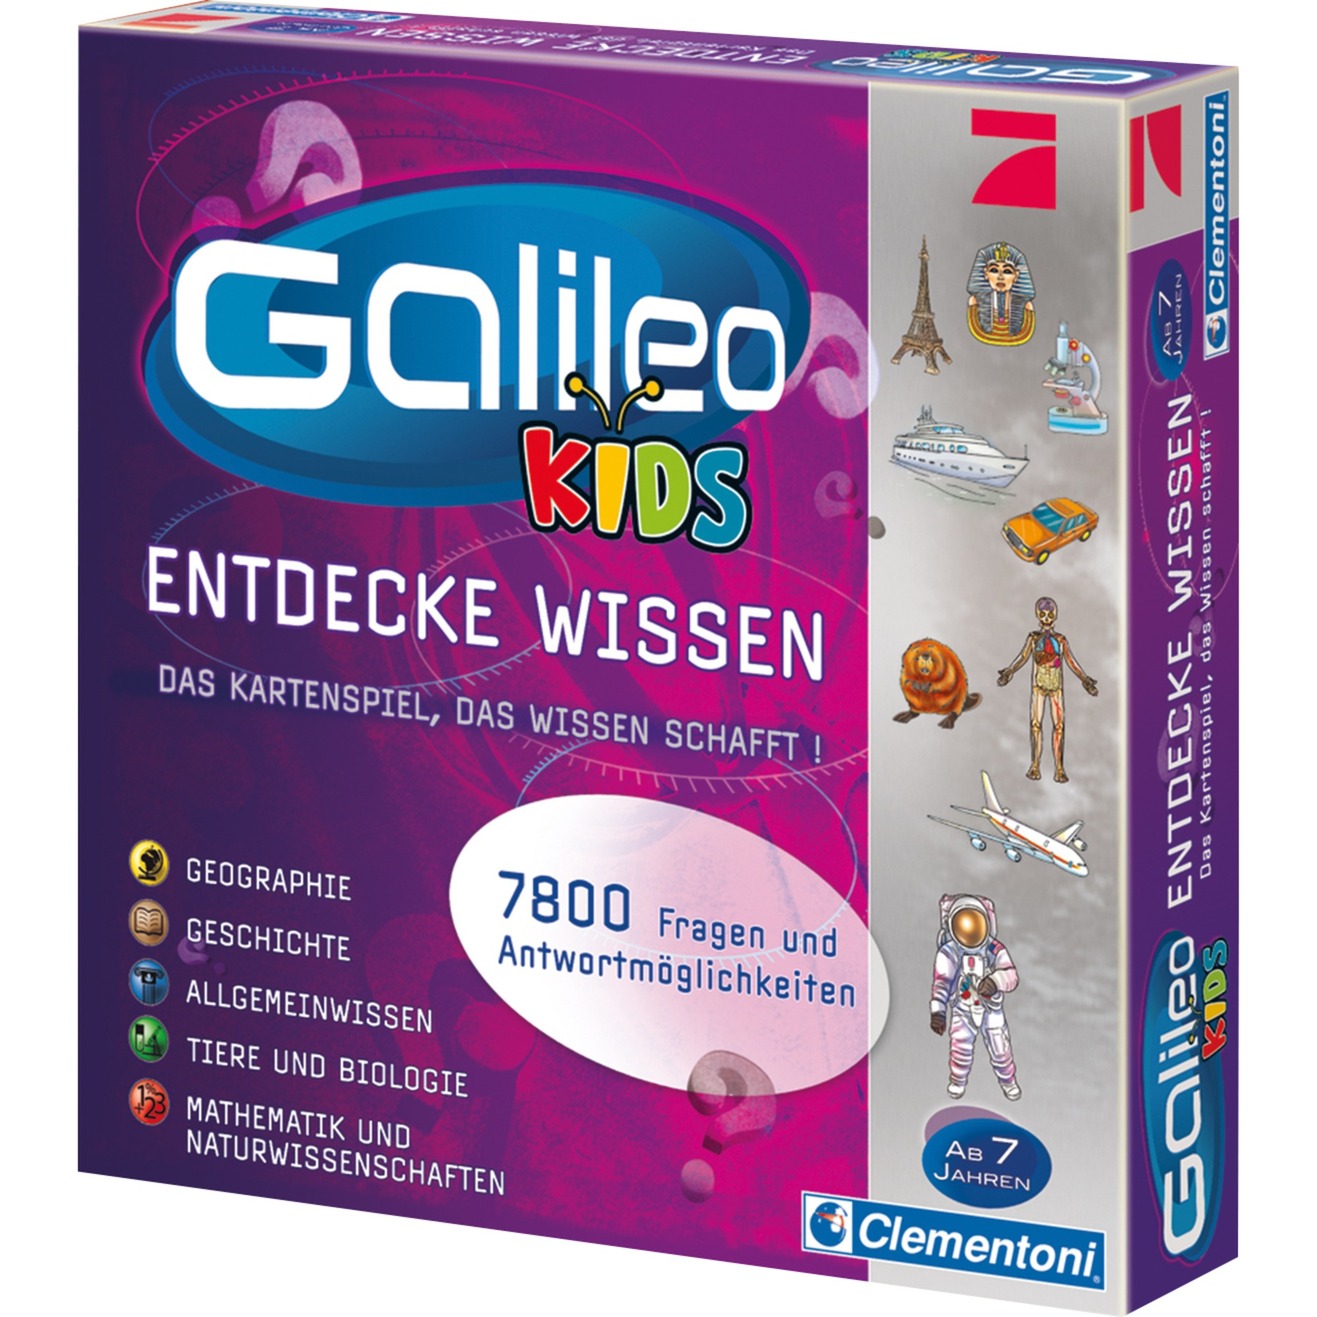 Image of Alternate - Galileo Kids - Das grosse Wissens-Quiz, Quizspiel online einkaufen bei Alternate